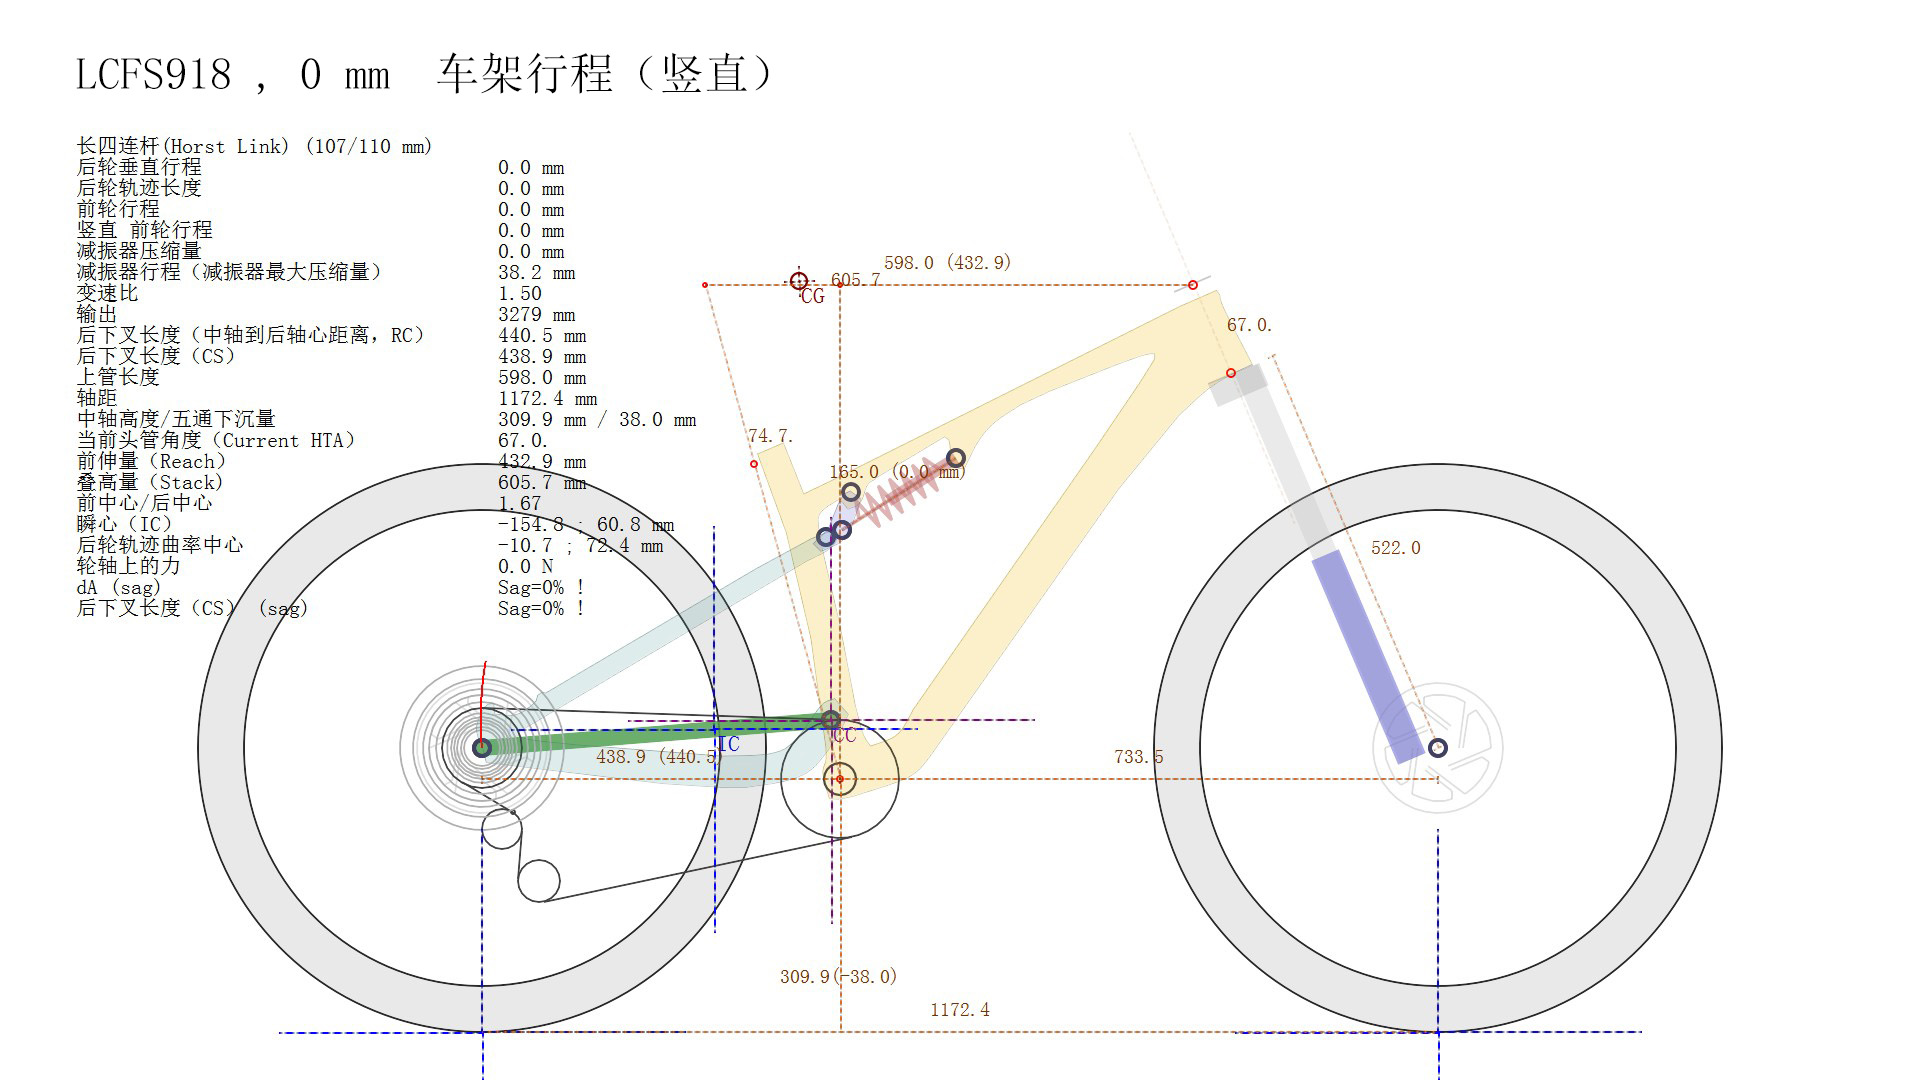 Simule detalles de datos del cuadro de bicicleta Travel XC de 0 ~ 110 mm